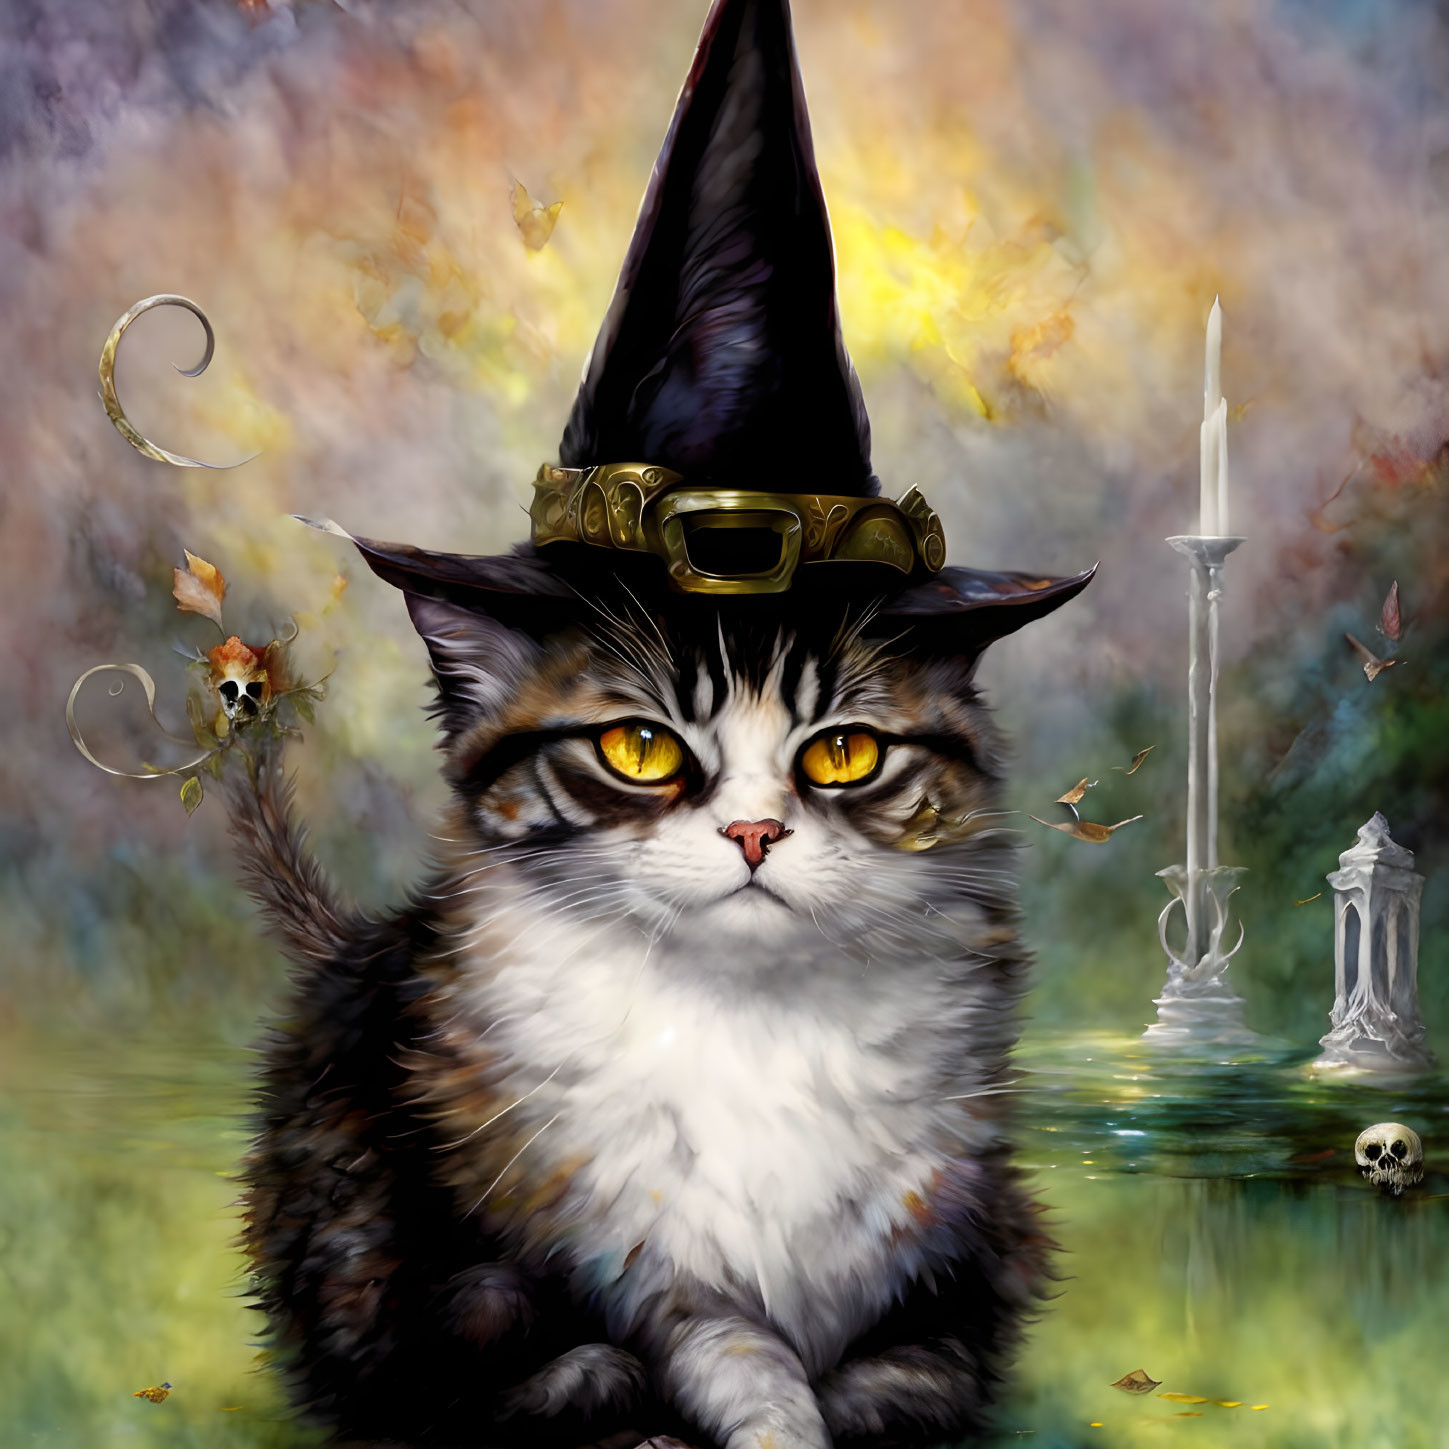 Wiccan Cat